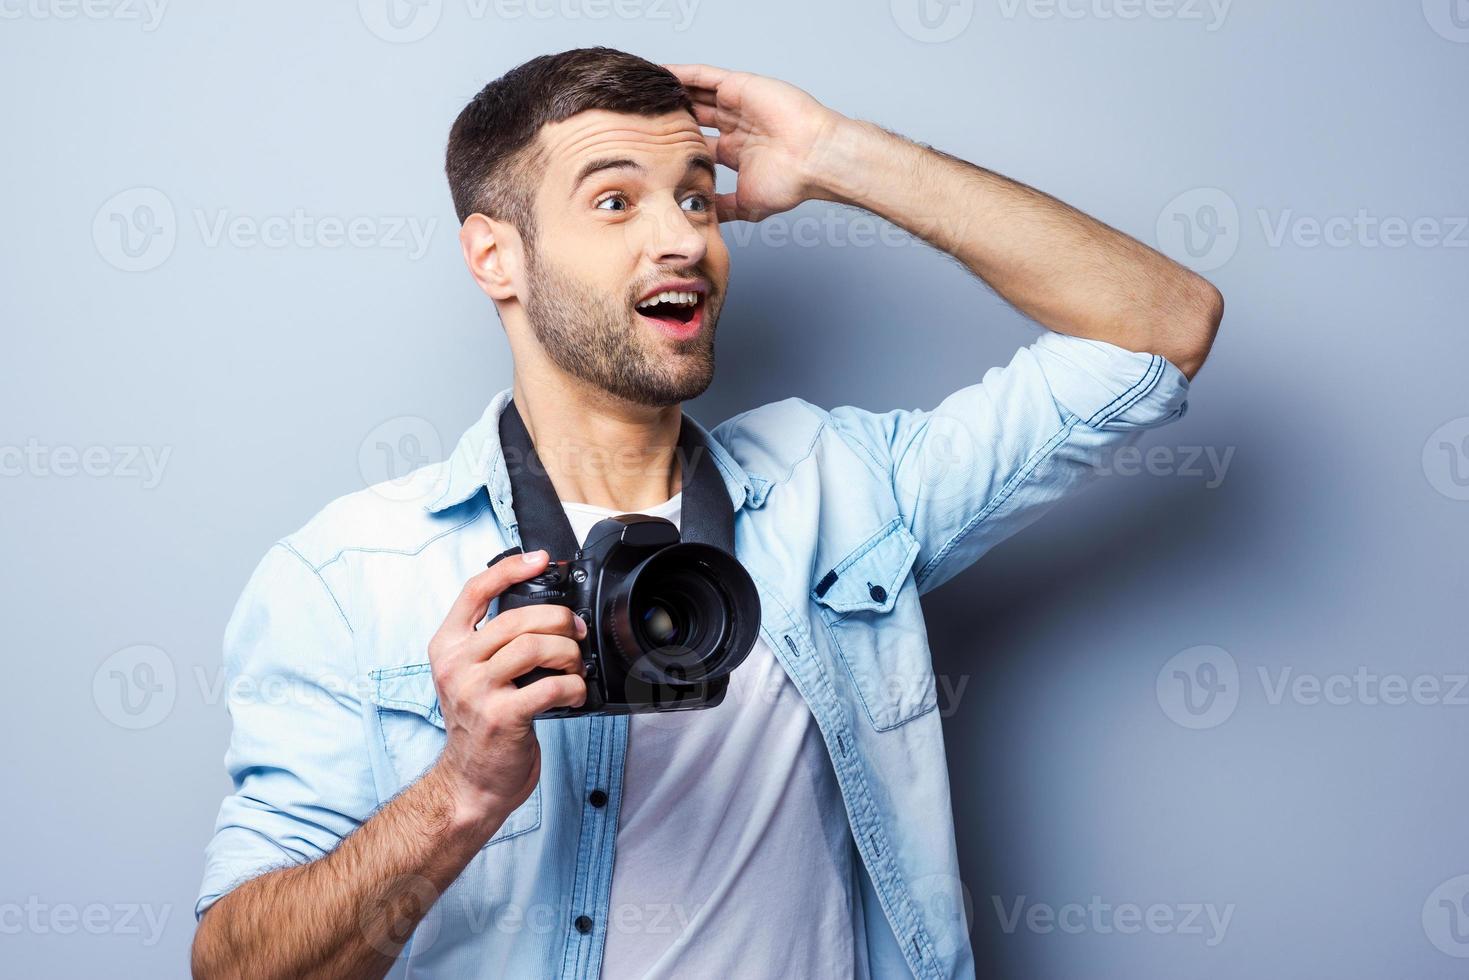 das ist einfach ein erstaunlich aufgeregter junger mann, der eine digitalkamera hält und wegschaut, während er vor grauem hintergrund steht foto